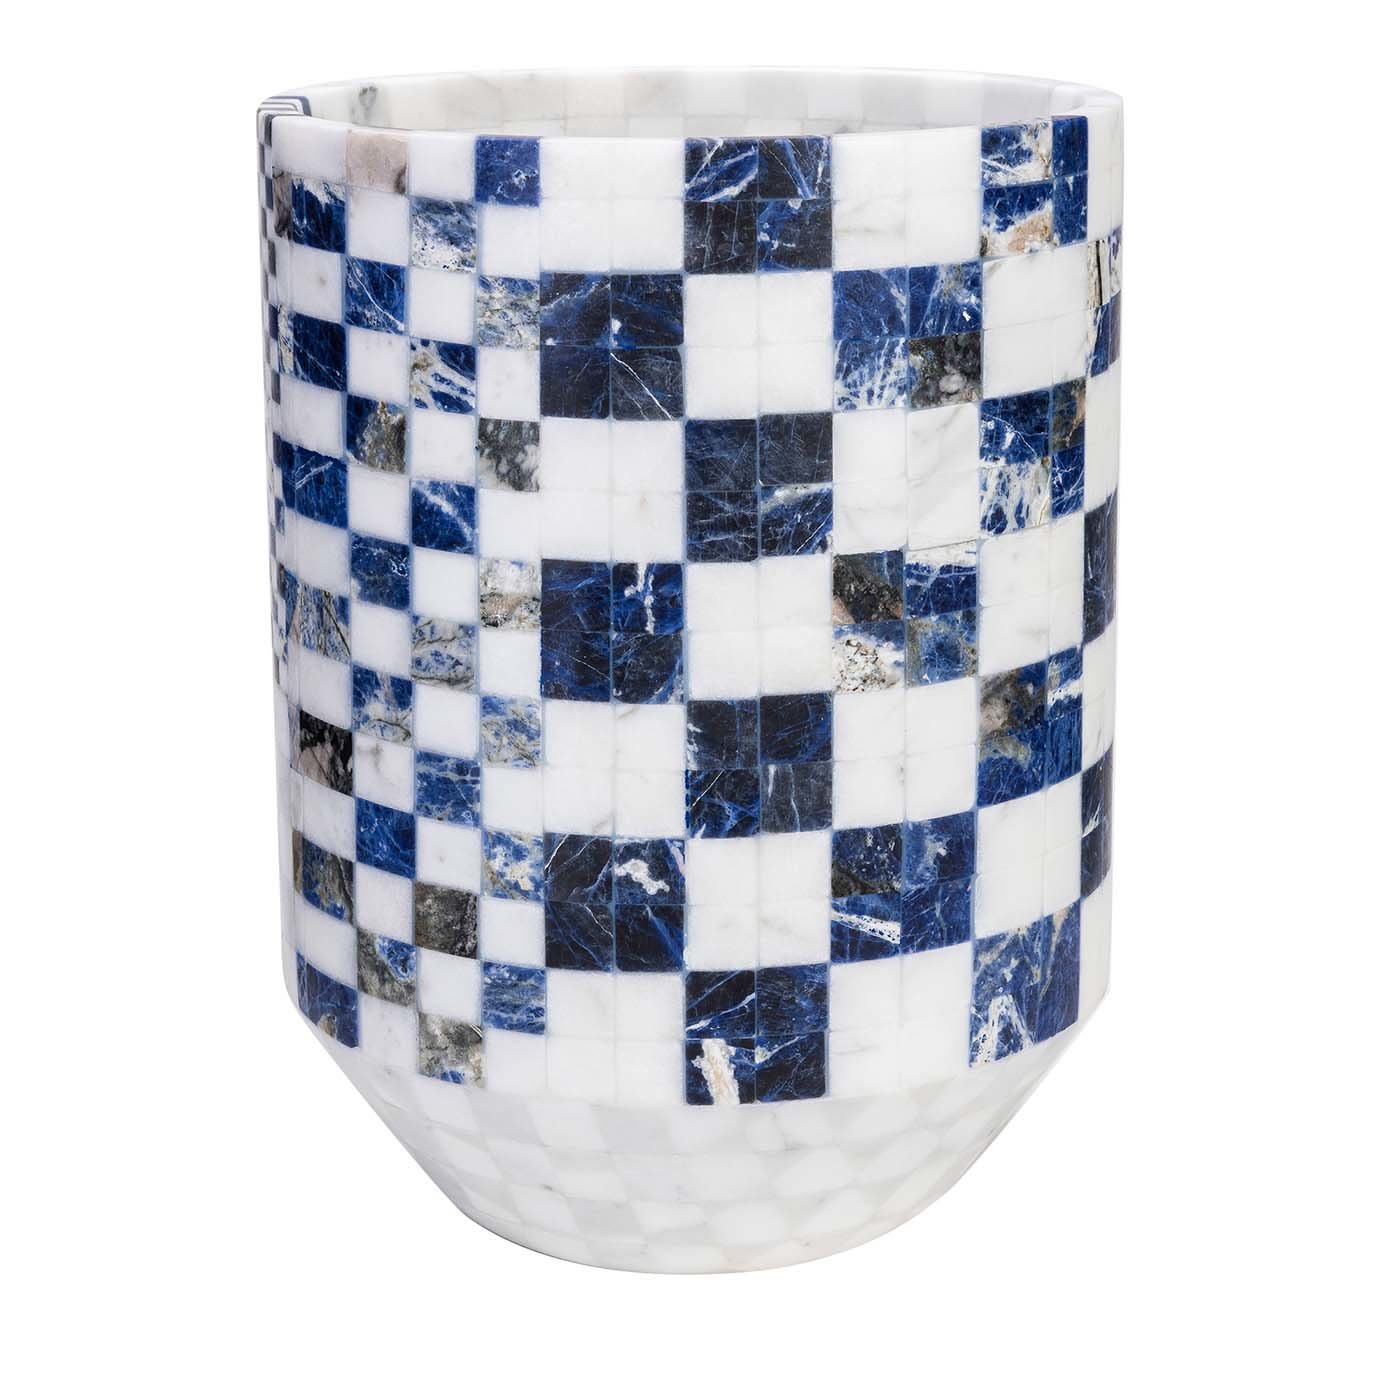 Hacker 1 Vase #2 - Manuel Coltri